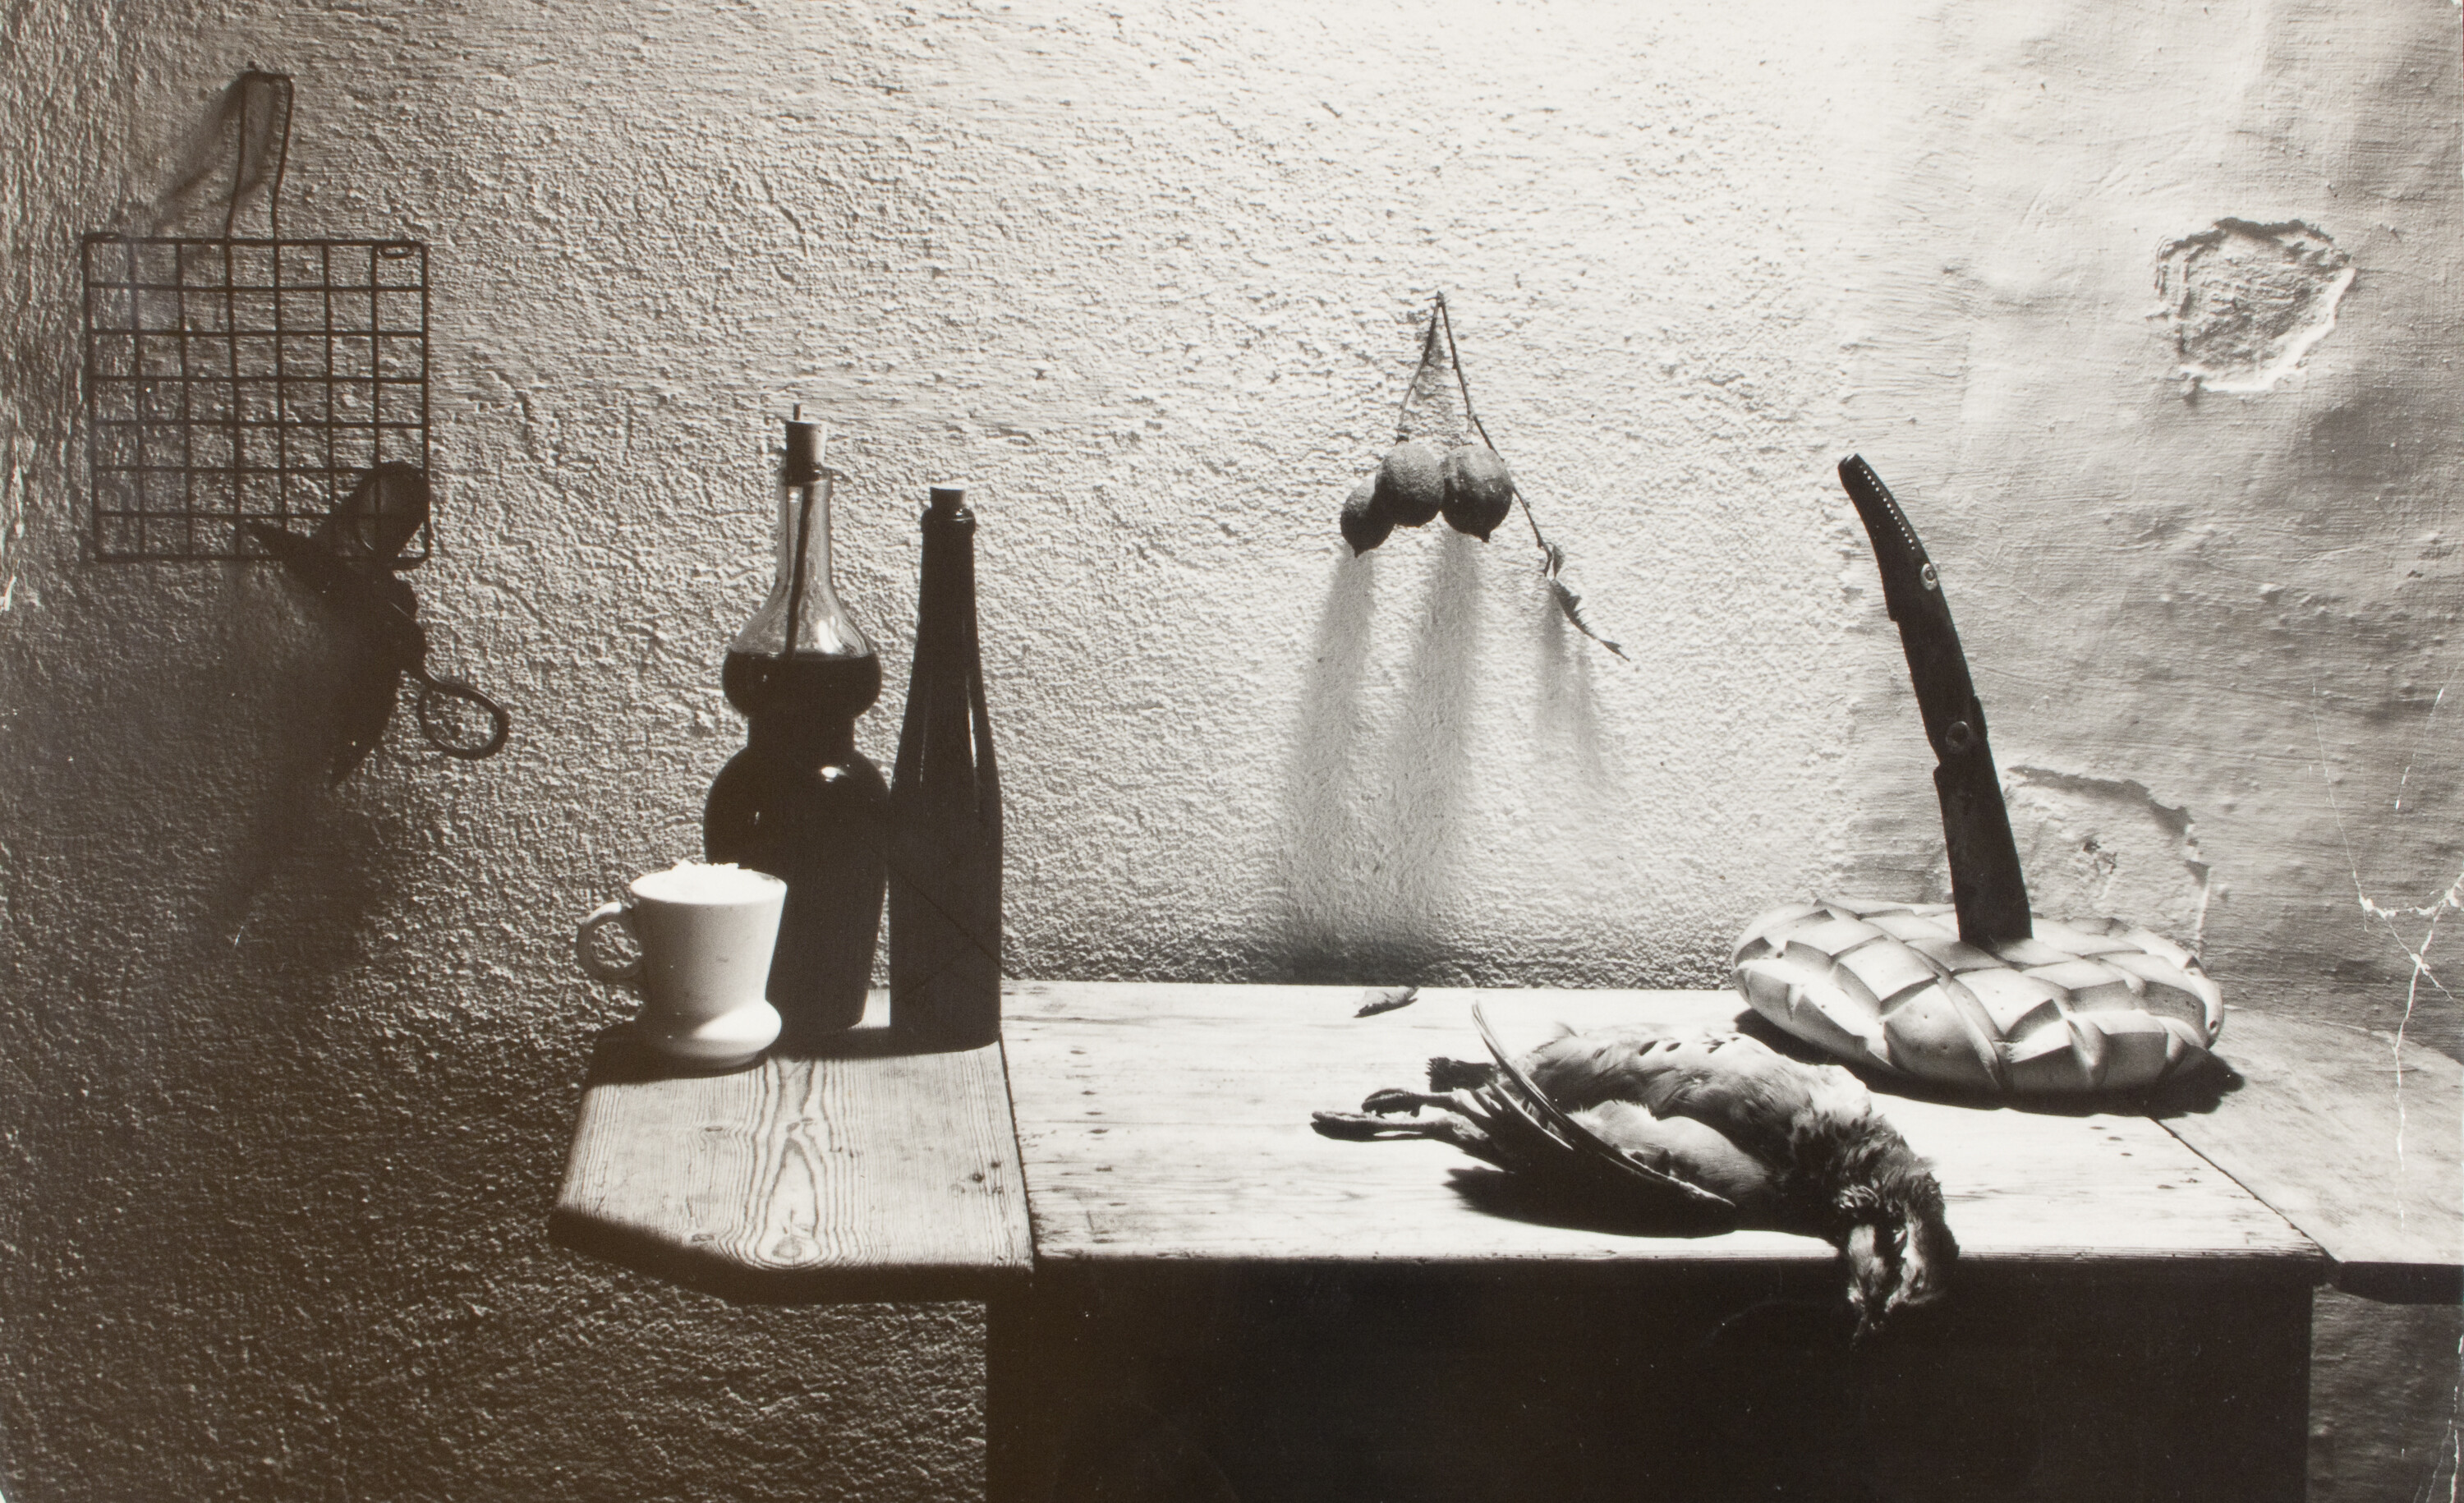 Для книги «La caza de la perdiz roja» («Охота на красную куропатку») Мигеля Делибеса, 1962. Фотограф Ориоль Маспонс